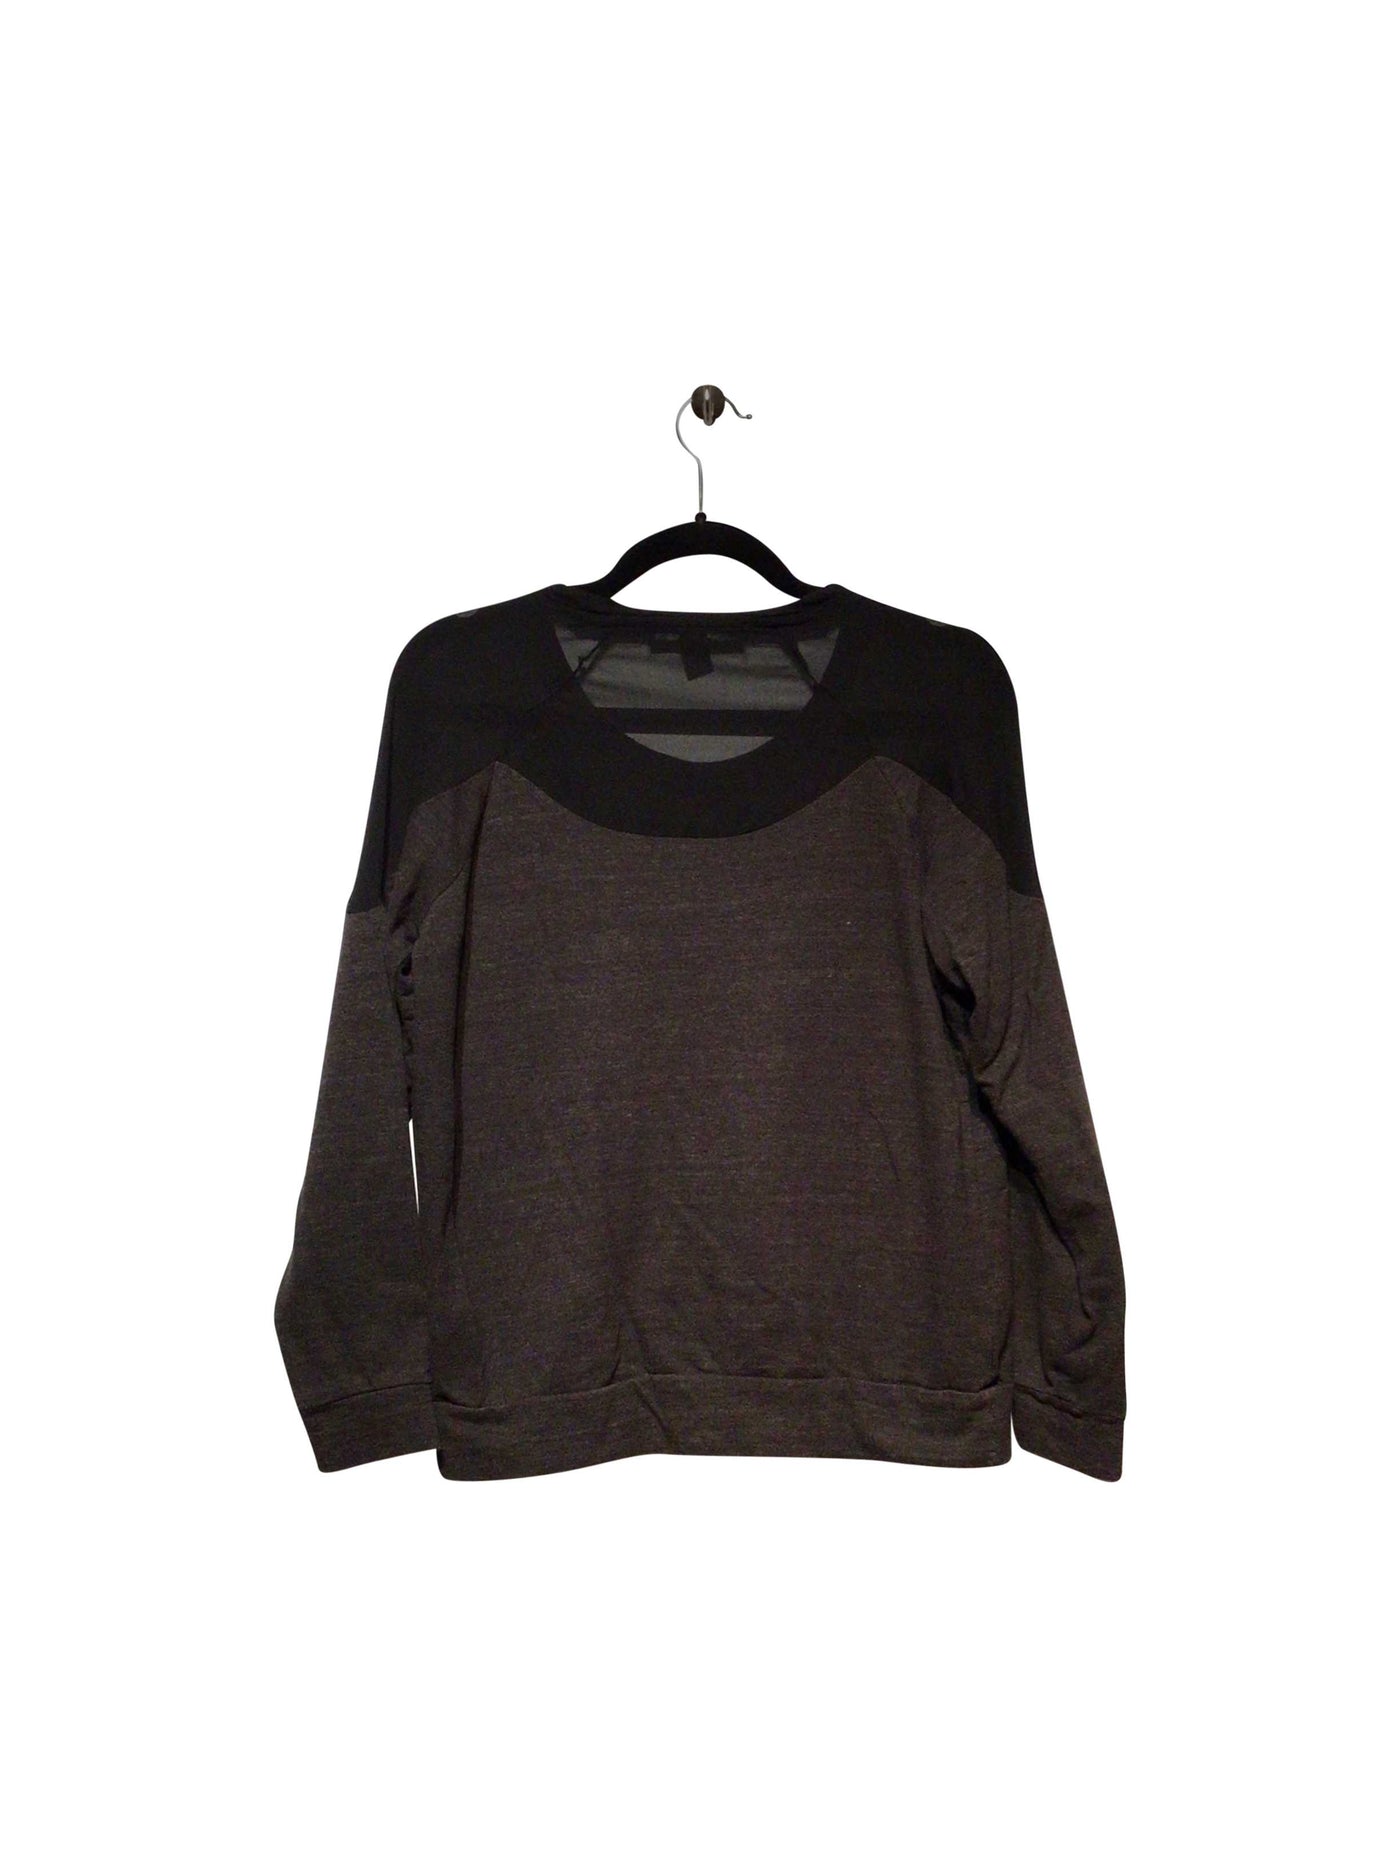 FOREVER 21 Regular fit Sweatshirt in Black  -  S  8.99 Koop